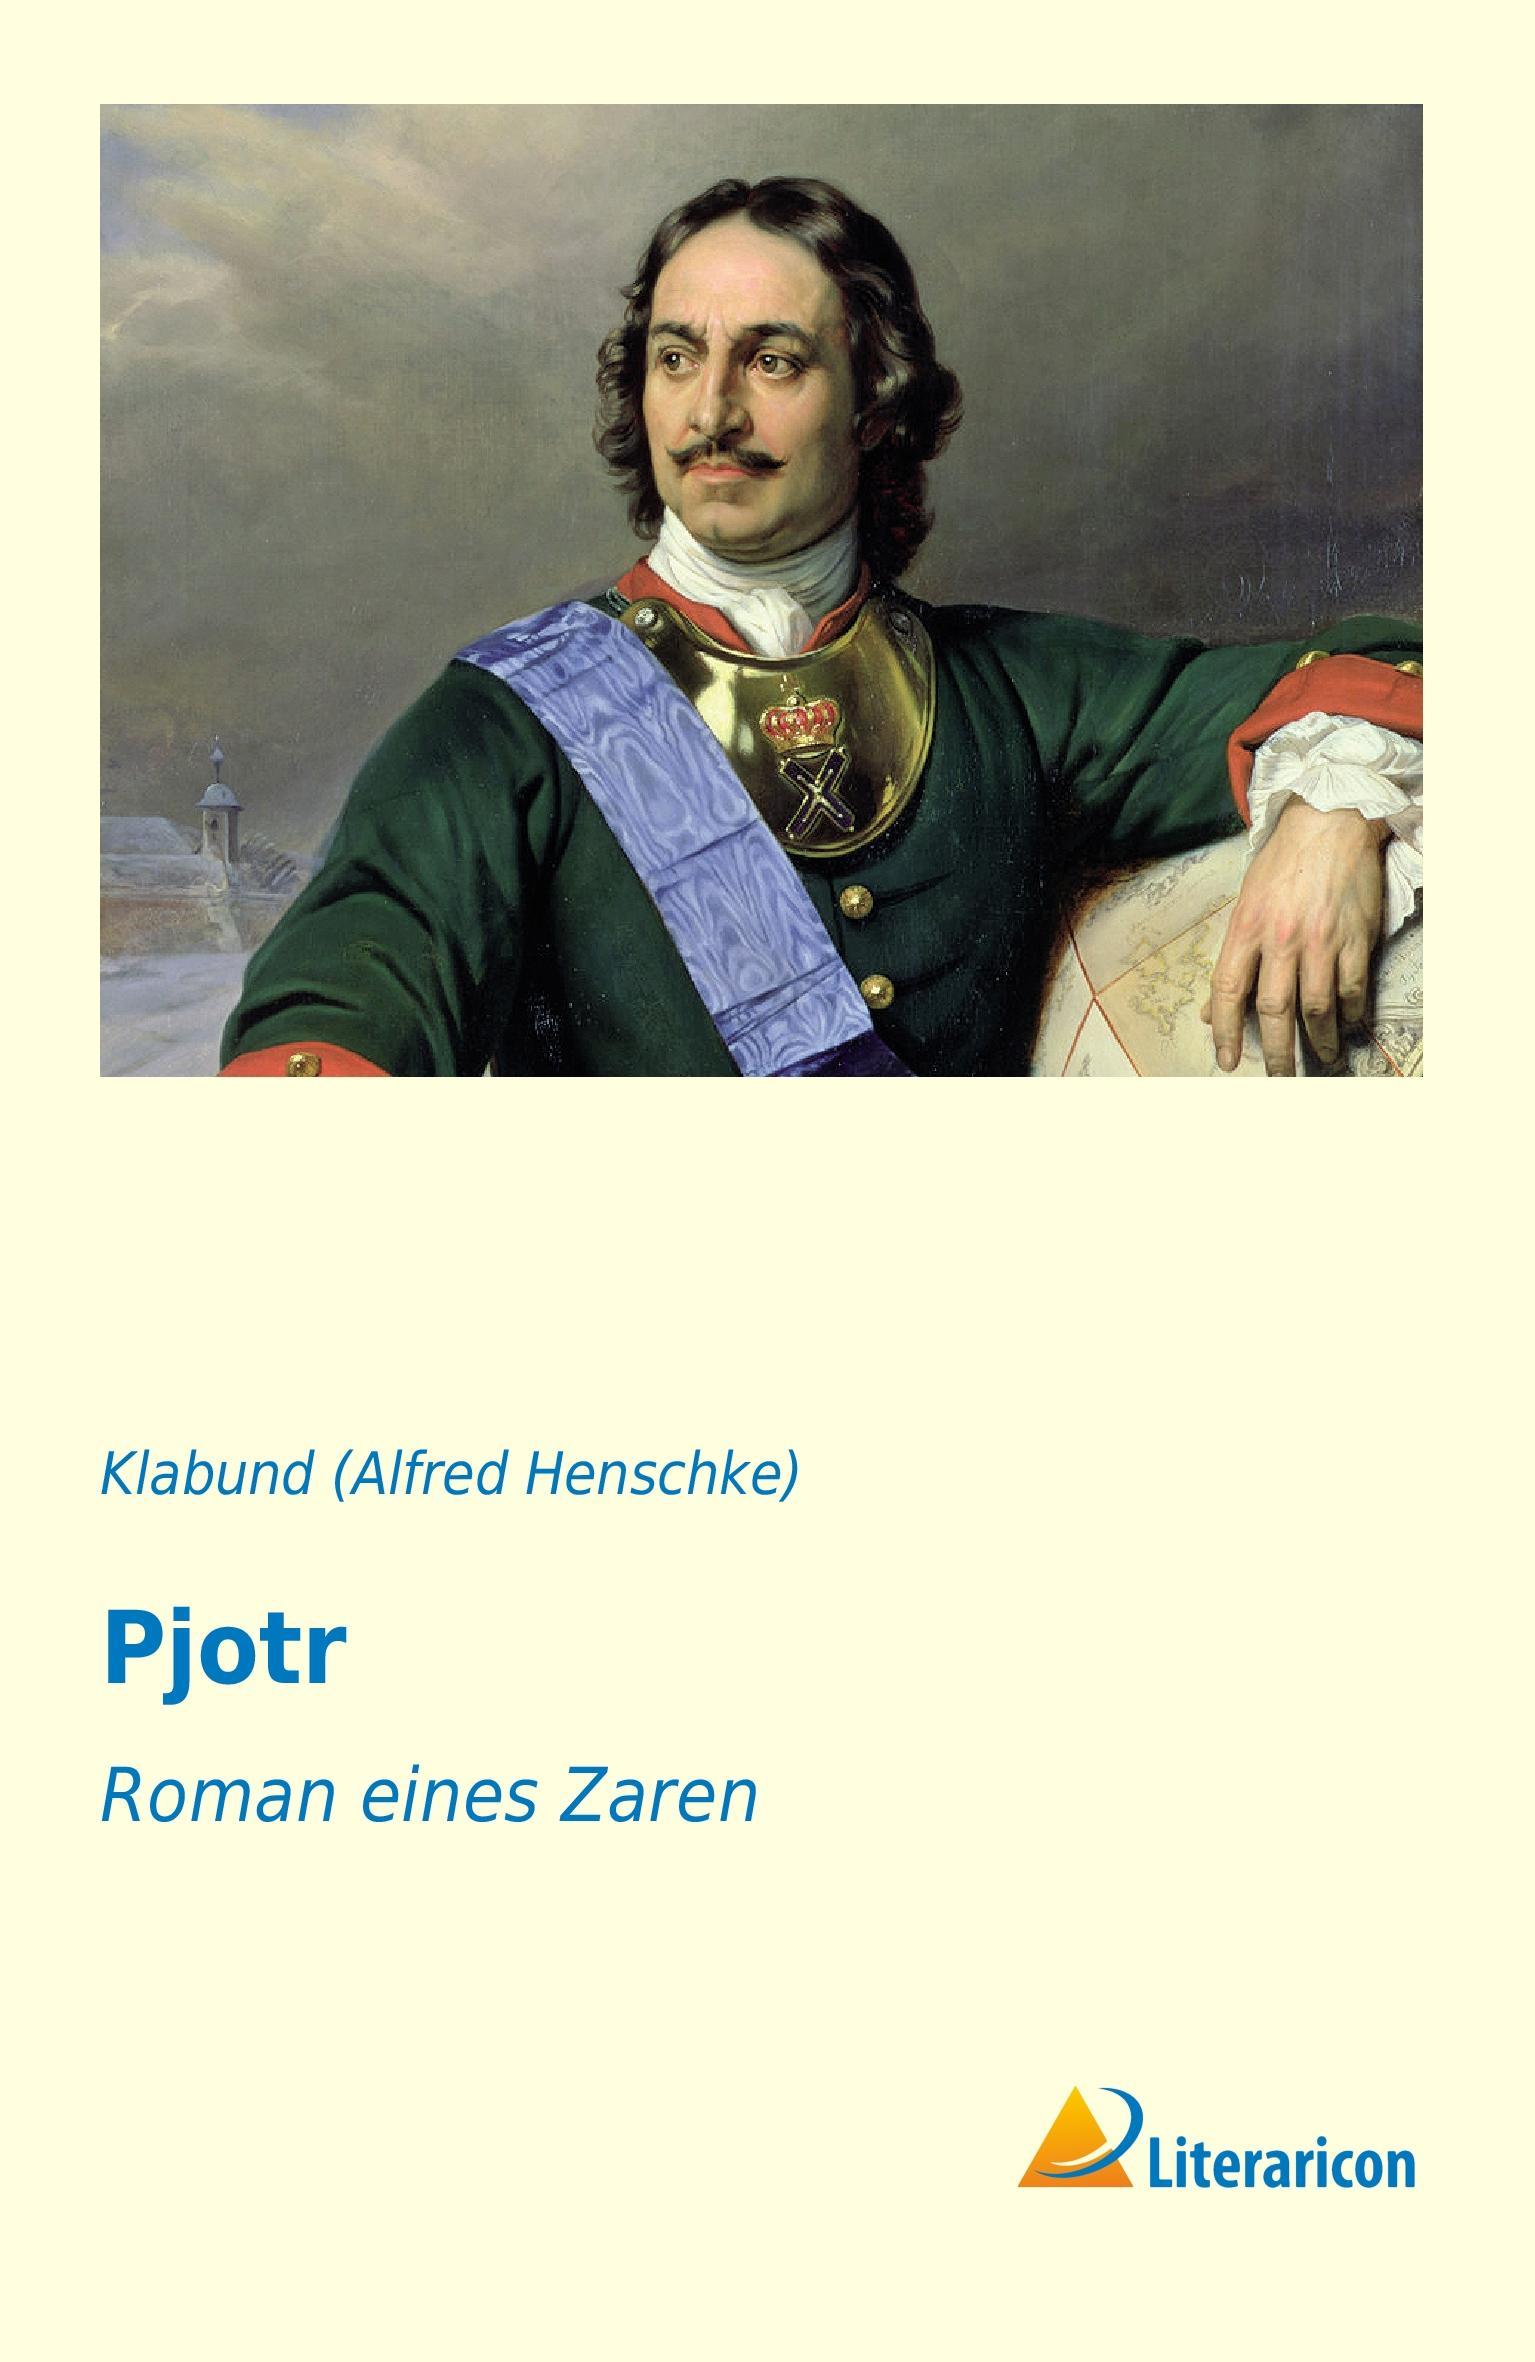 Pjotr | Roman eines Zaren | Klabund | Taschenbuch | Paperback | 76 S. | Deutsch | 2016 | Literaricon Verlag | EAN 9783956974205 - Alfred Henschke), Klabund